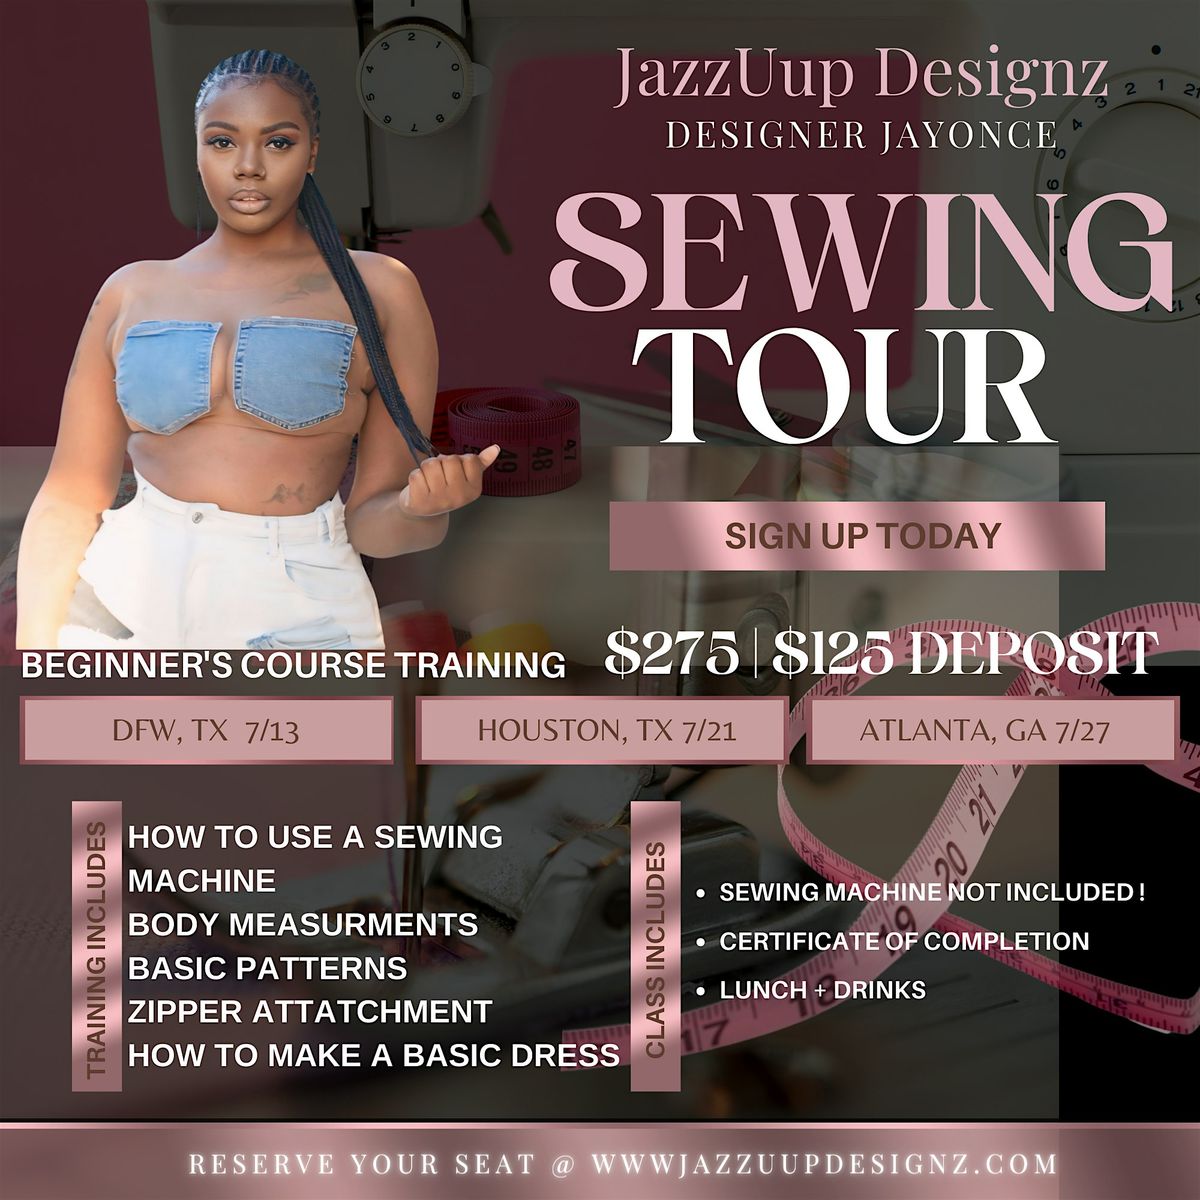 JazzUup Designz Sewing Tour DFW